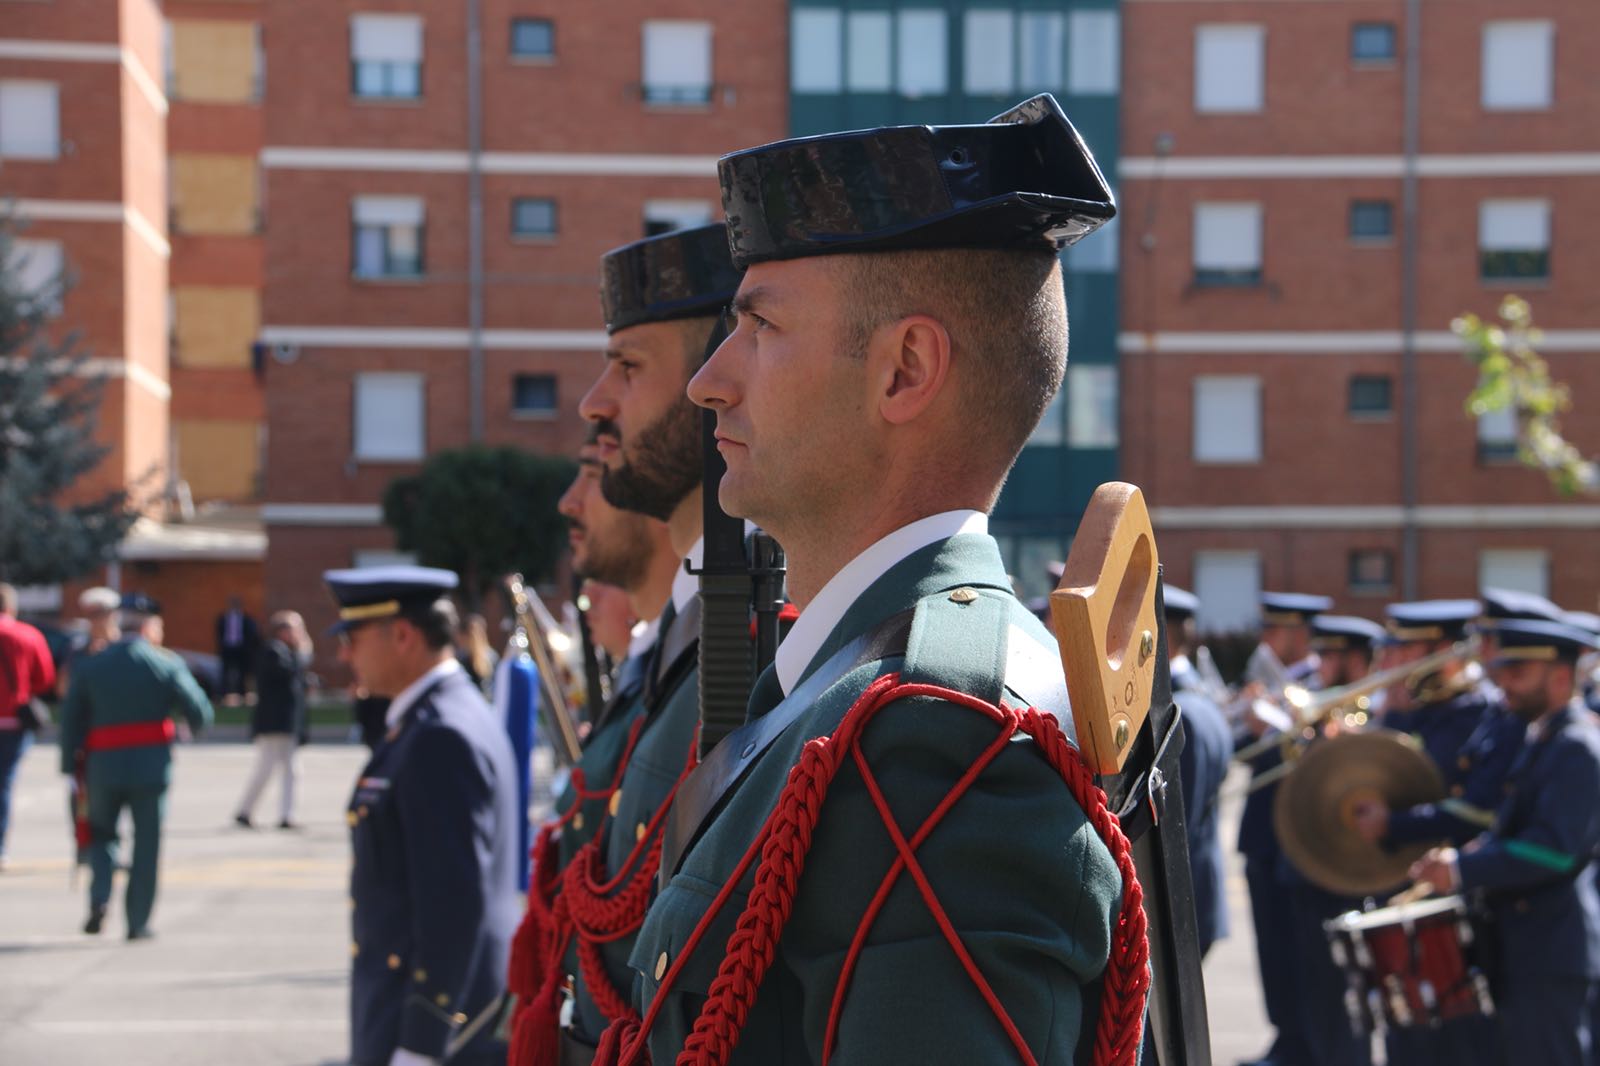 Disciplina, lealtad, compañerismo y servicio son los valores sobre los que nació en 1844 la Guardia Civil, la institución más antigua de España y que este jueves ha conmemorado en León su 174 aniversario